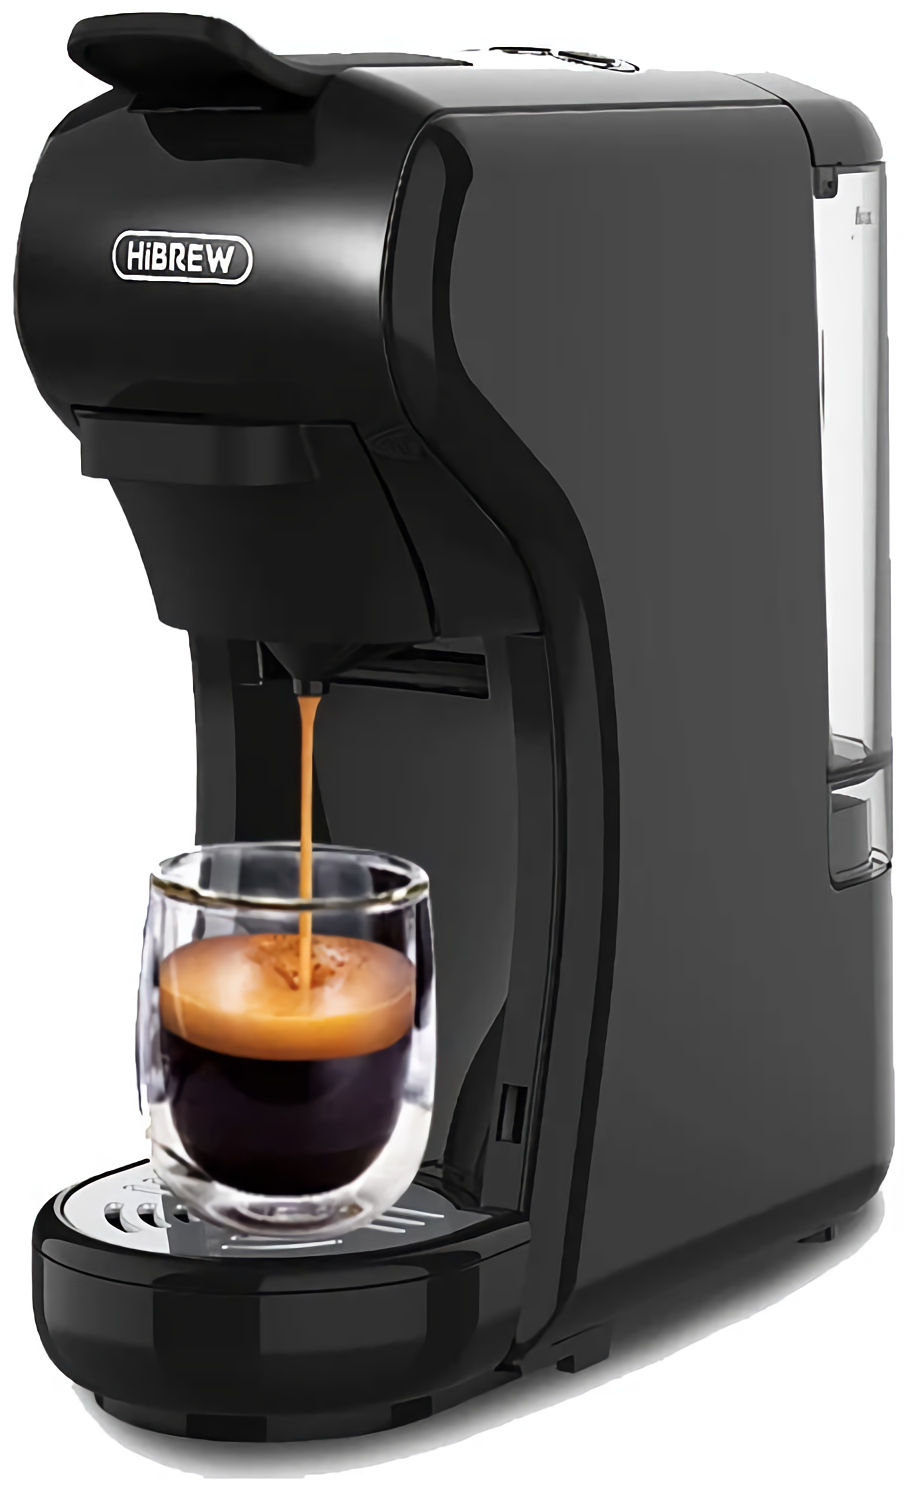 Капсульная кофемашина, Hibrew (ST-504)H1A черный совместимый Капсулы Nespresso /Капсулы Dolce Gusto/Капсулы Starbucks/Свежемолотый кофе